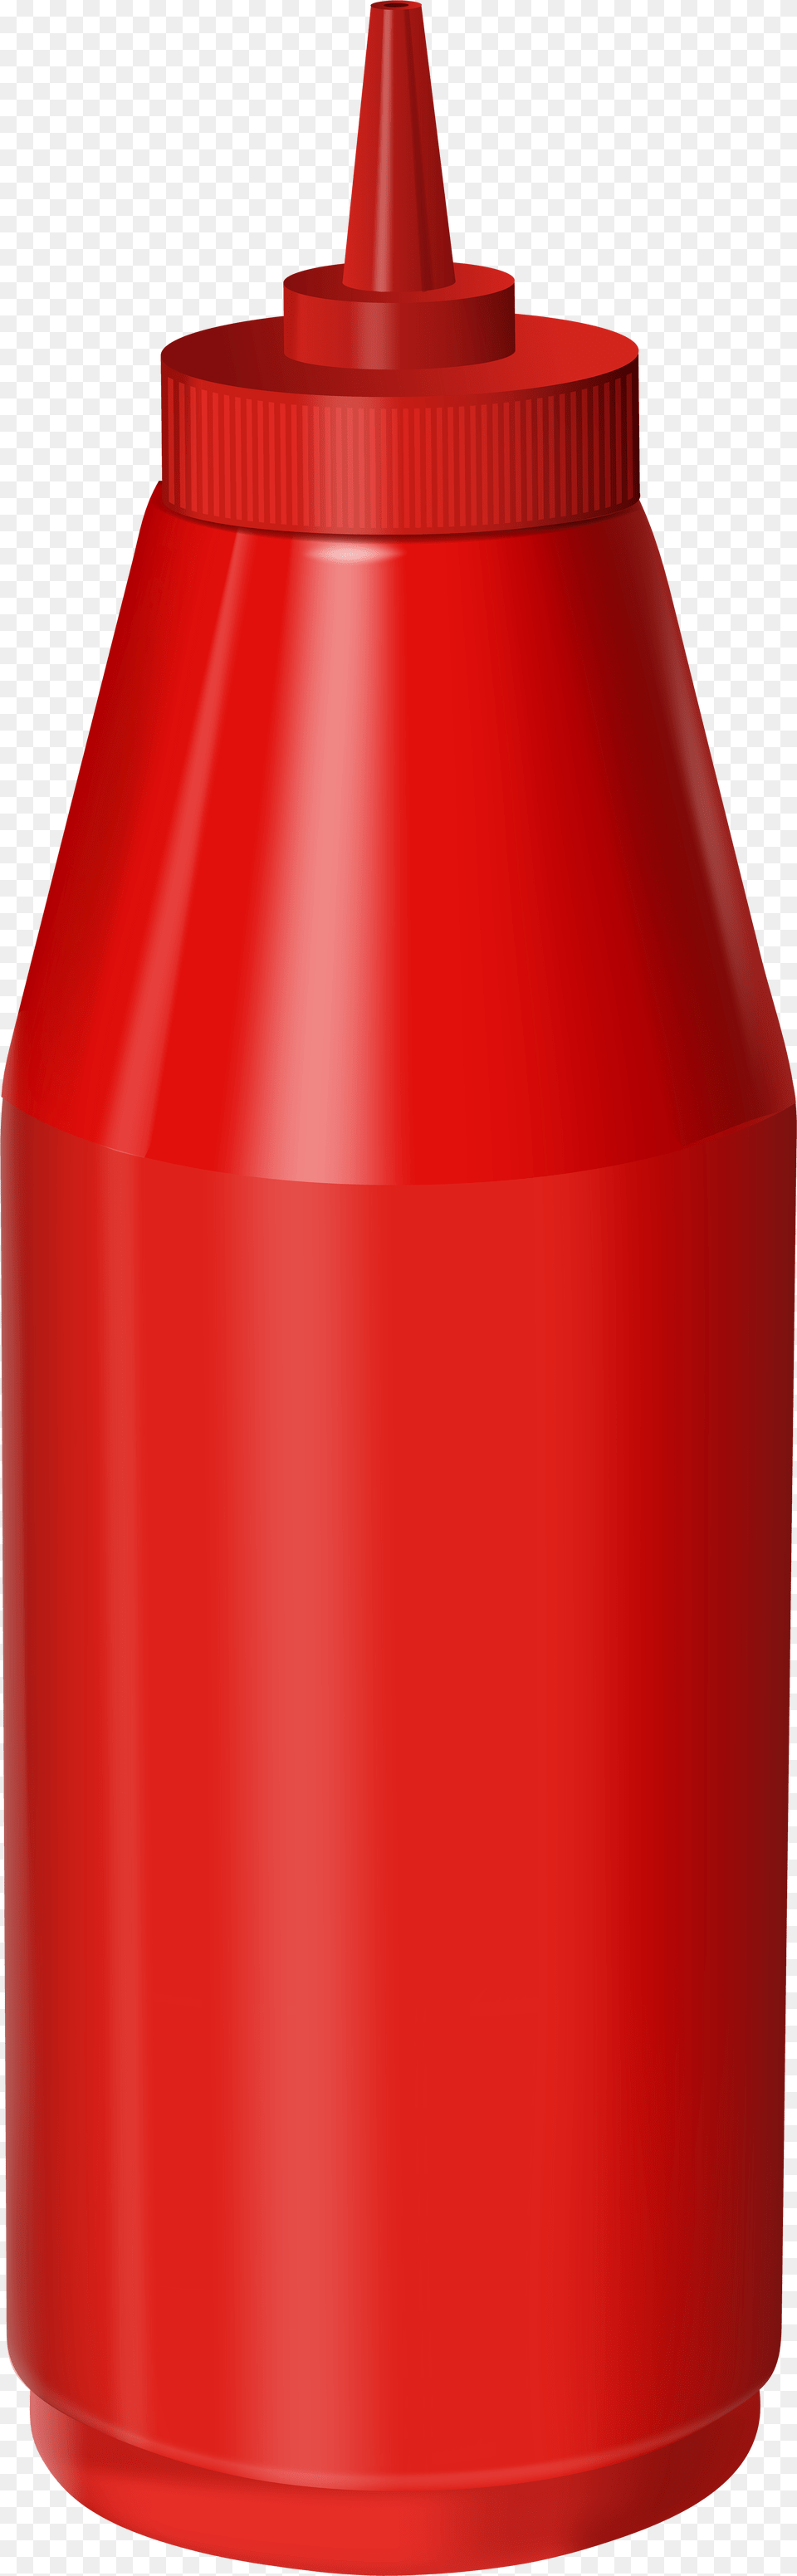 Ketchup Clipart Transparent Ketchup Bottle Transparent, Food Png Image